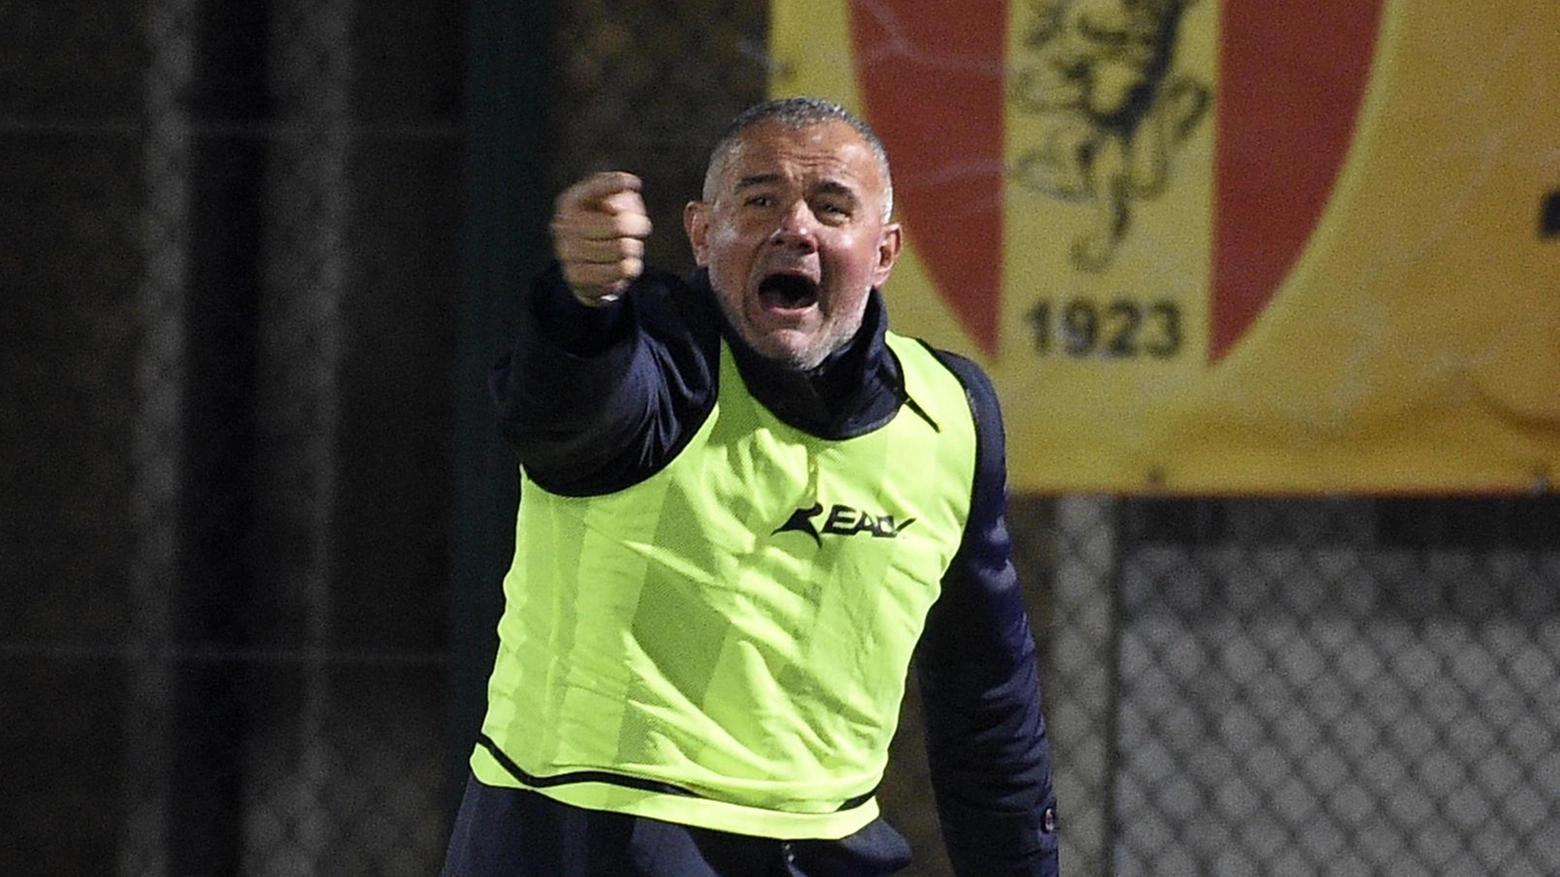 L’allenatore Filippi orientato a riproporre la squadra del derby con l’Ancona. Si avvicina il rientro di Longobardi